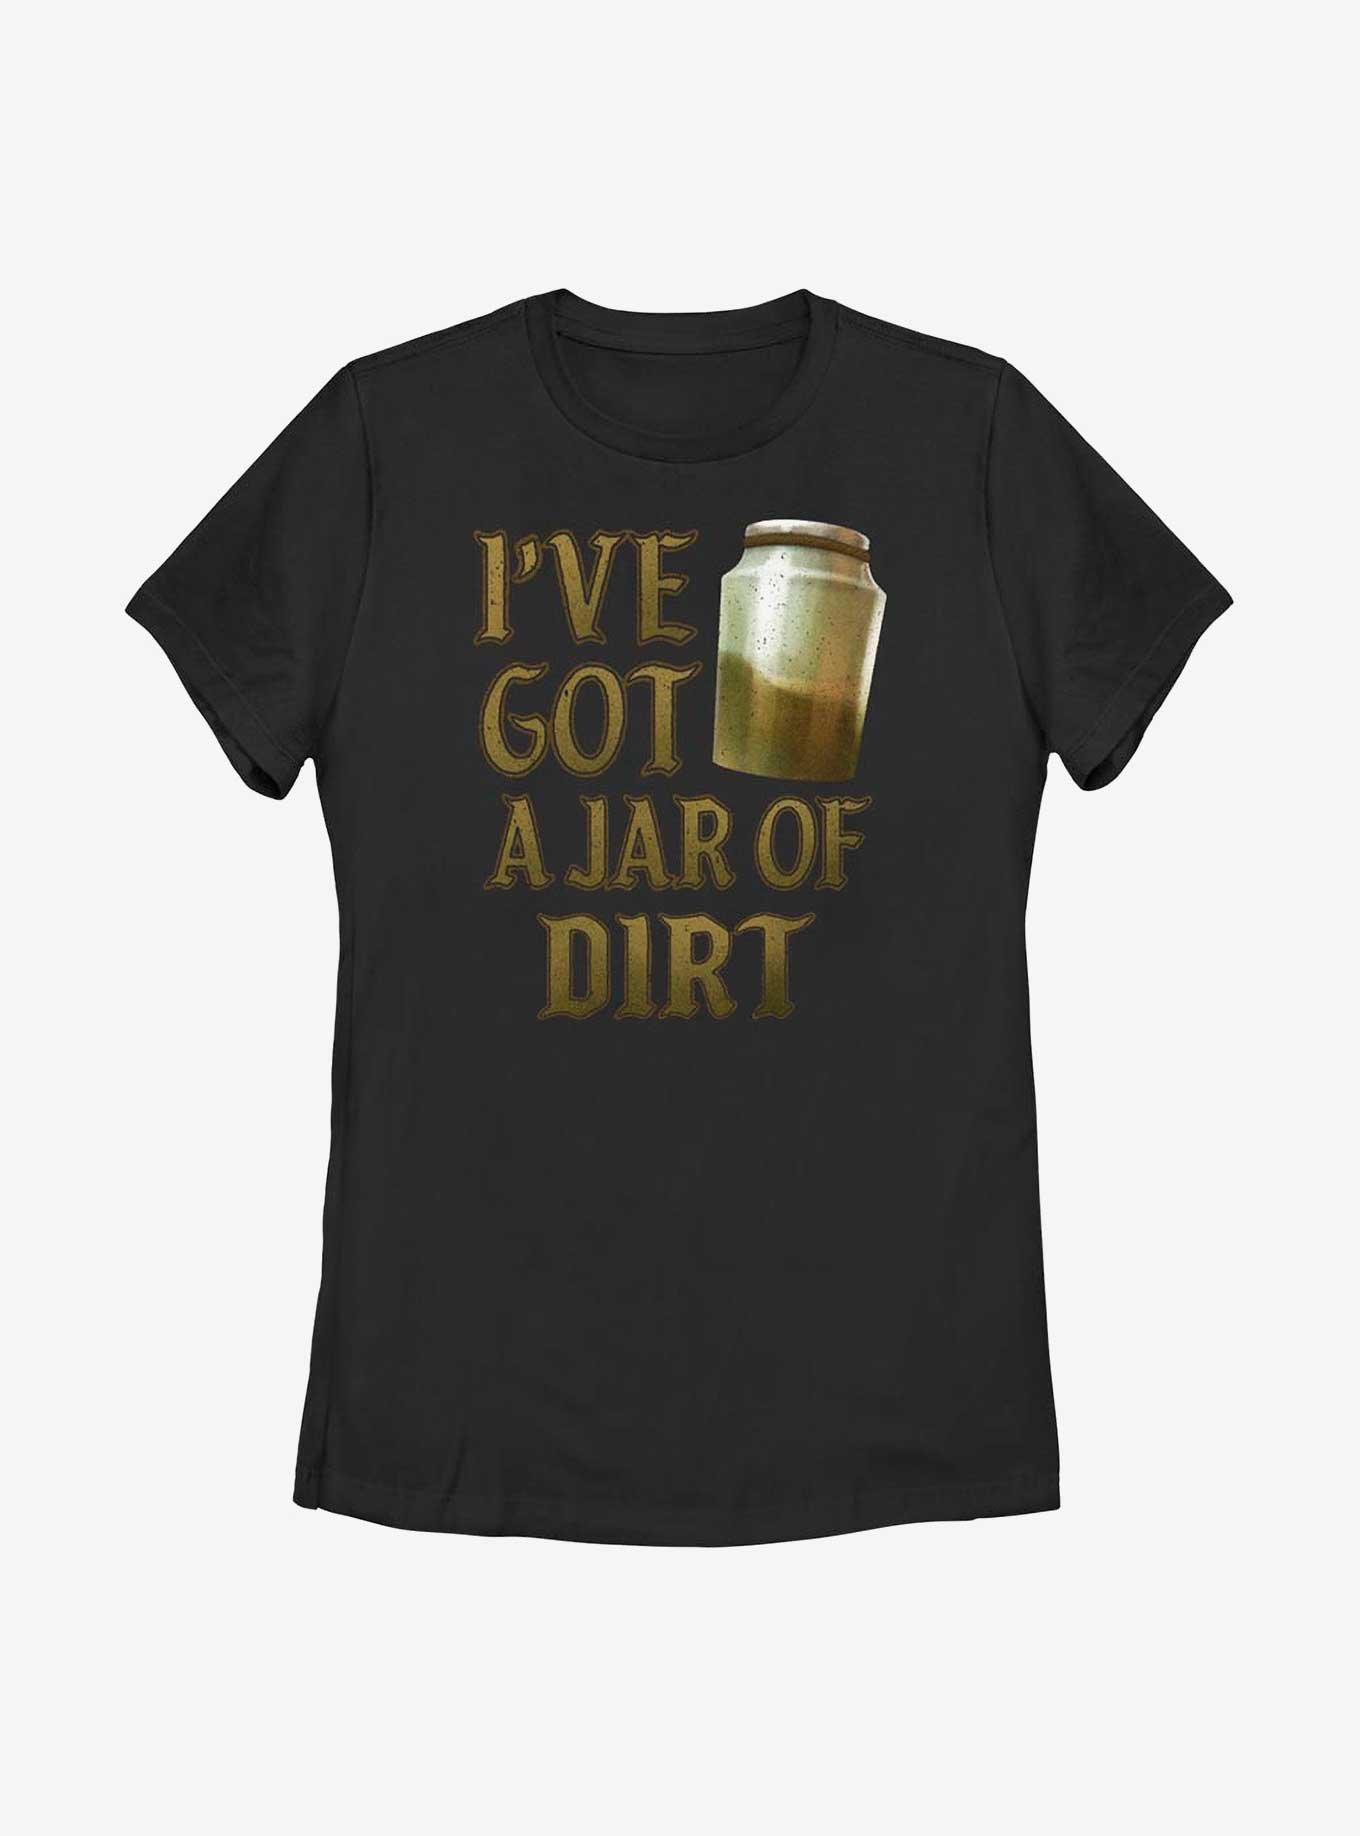 Disney Pirates of the Caribbean Jar Of Dirt Womens T-Shirt, BLACK, hi-res